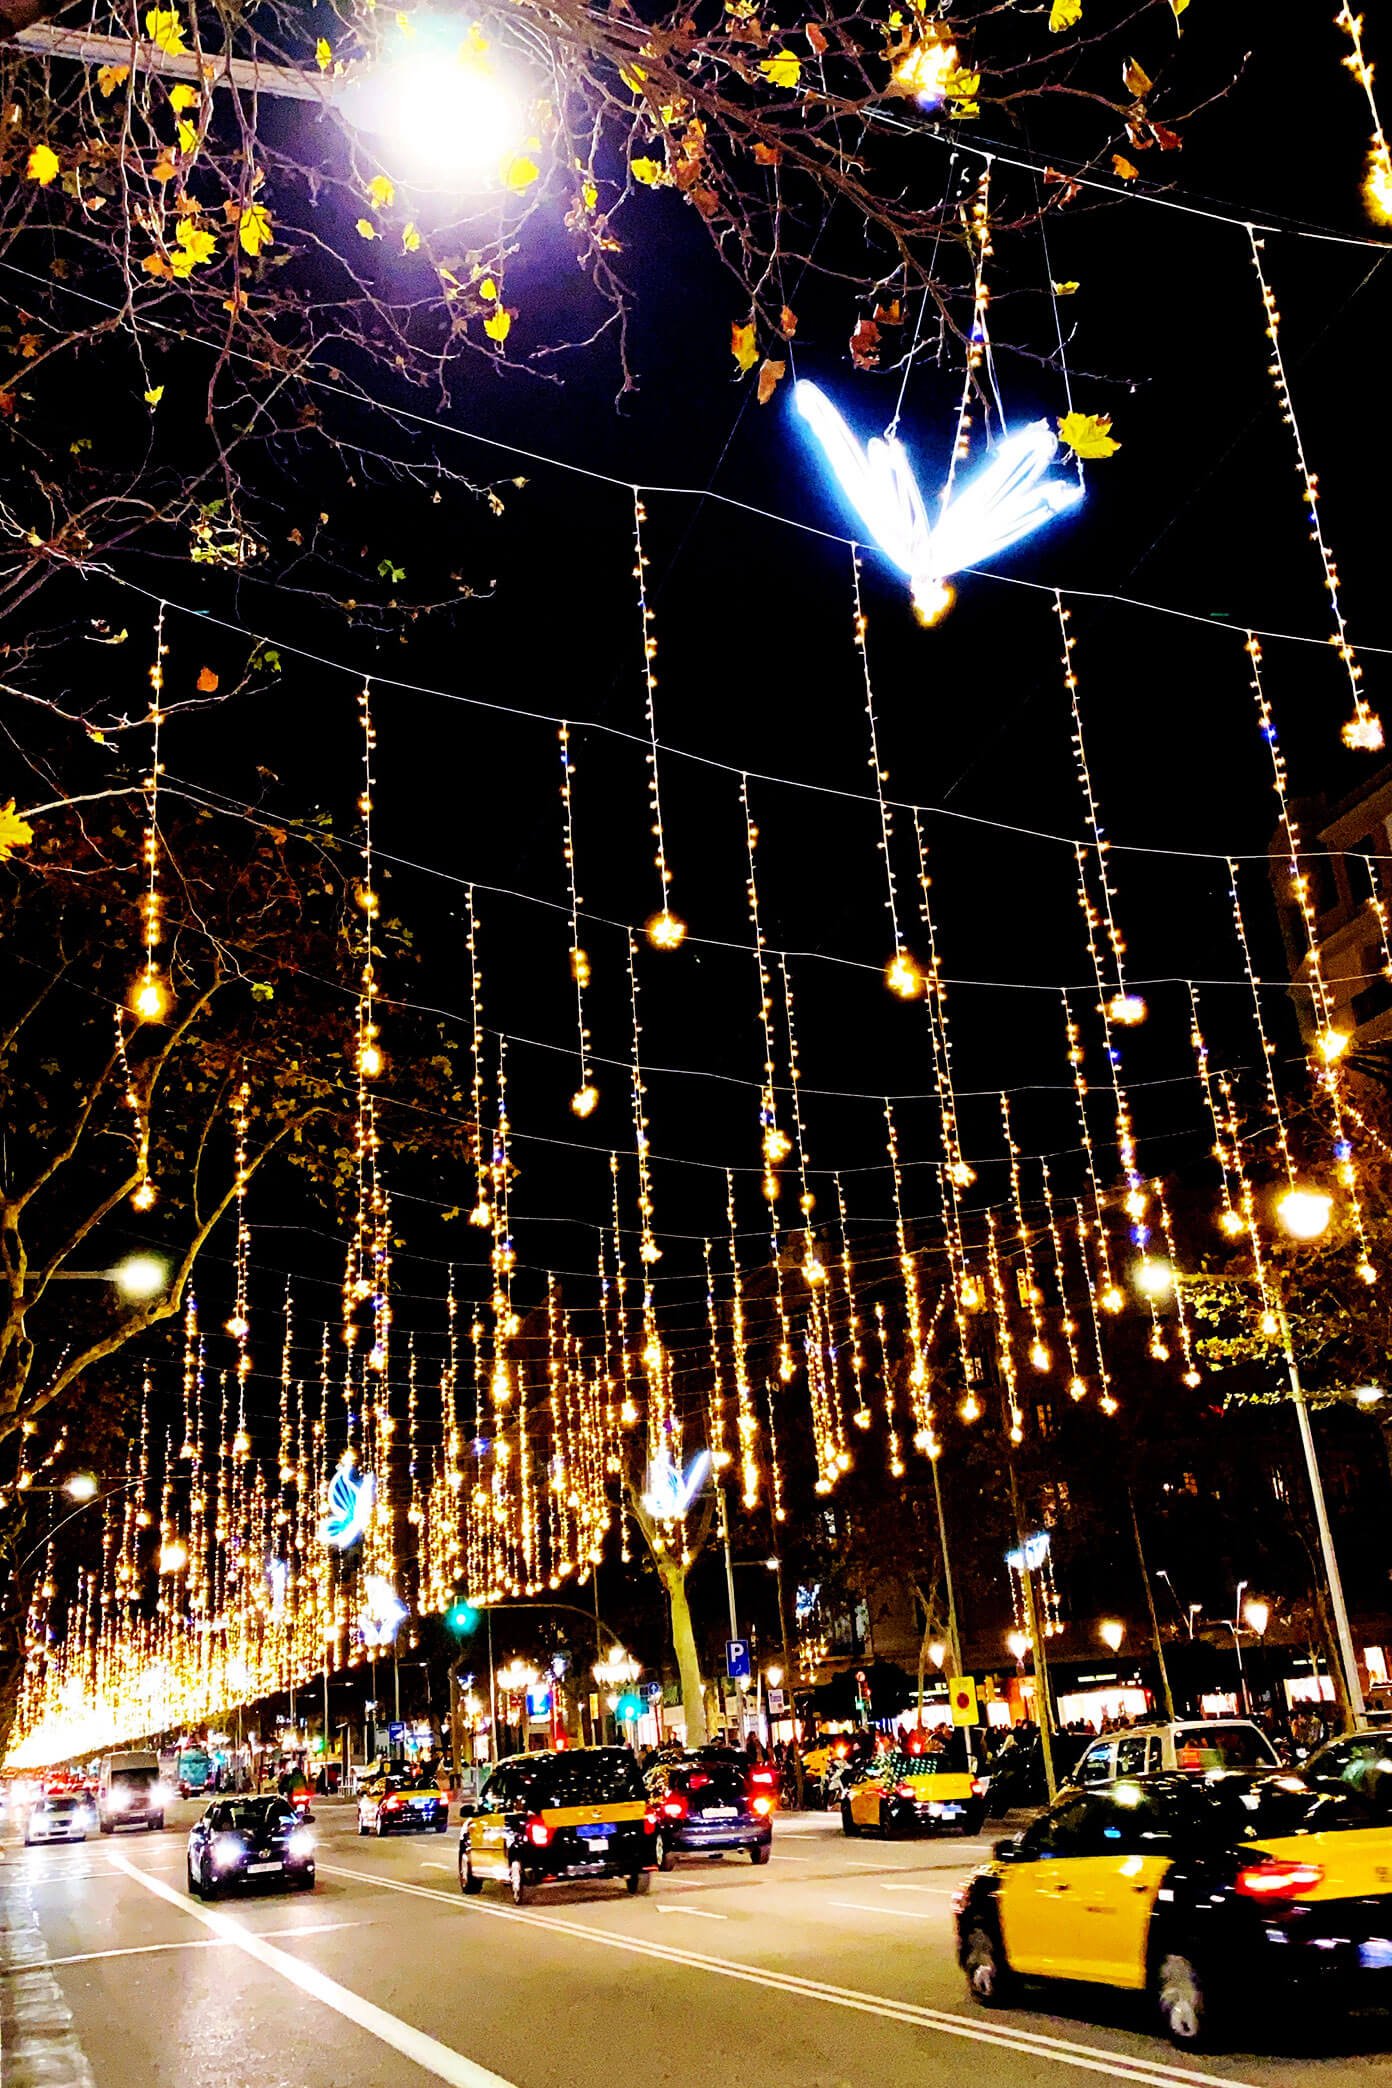 Barcelona Christmas Lights